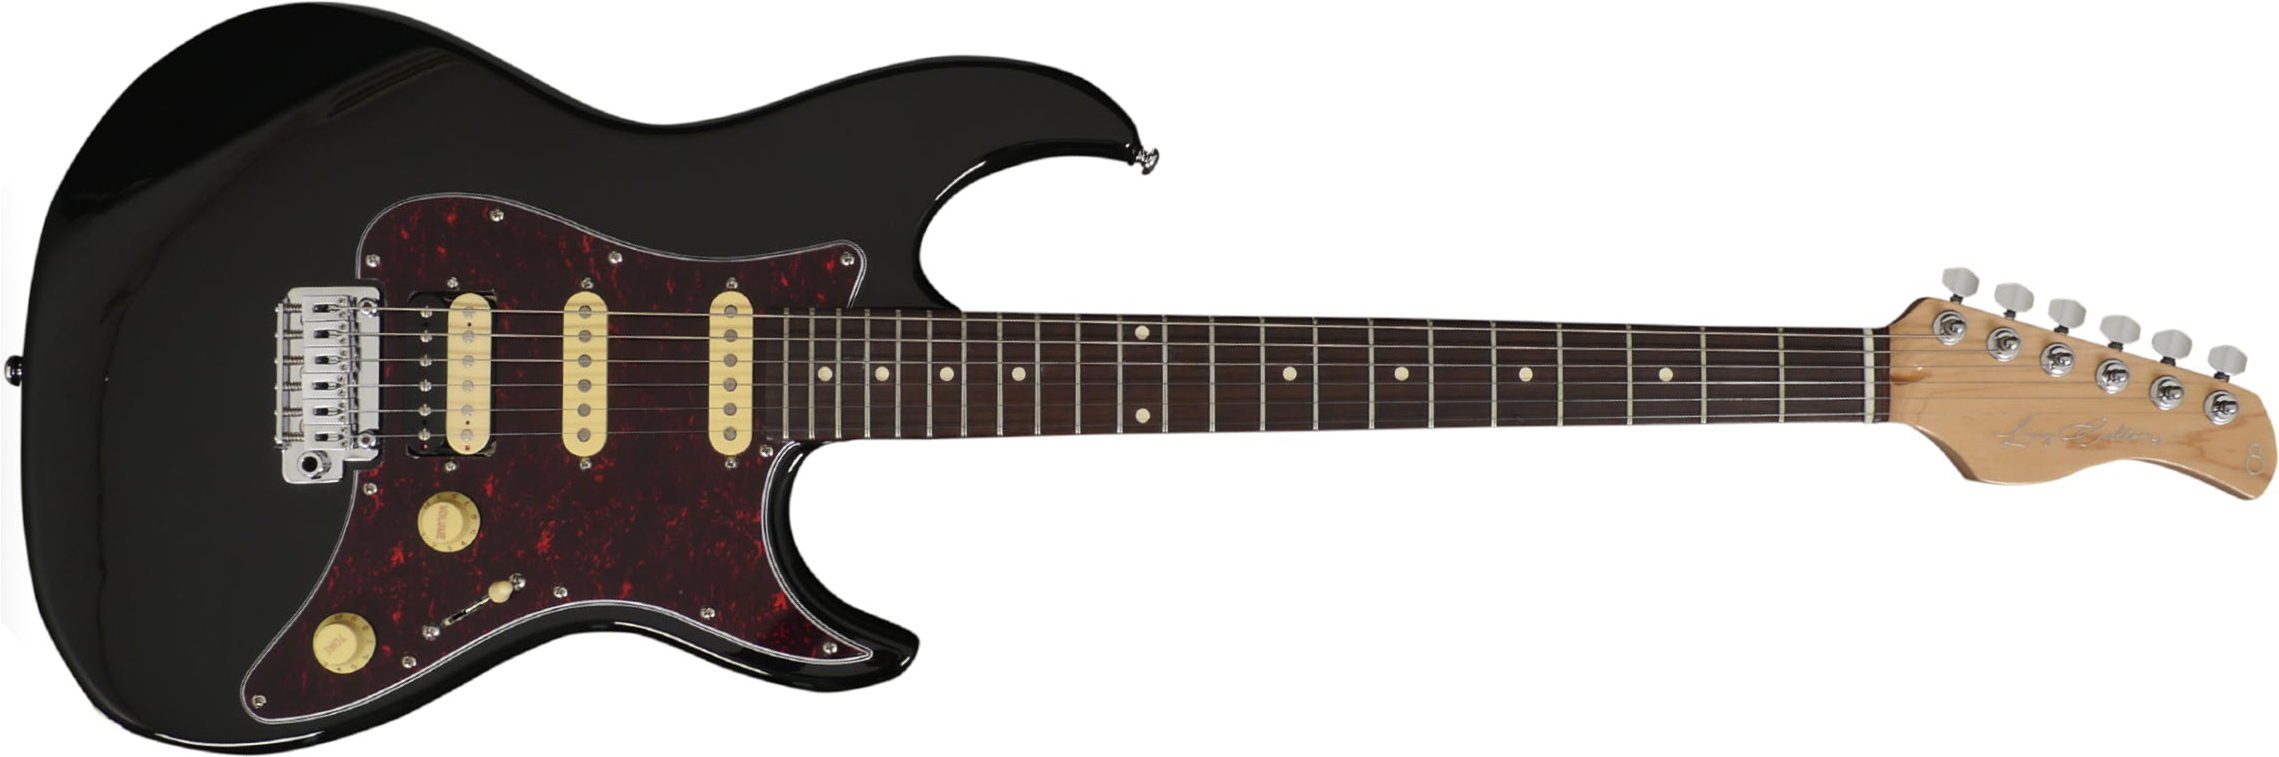 Sire Larry Carlton S3 Signature Hss Trem Rw - Black - Elektrische gitaar in Str-vorm - Main picture